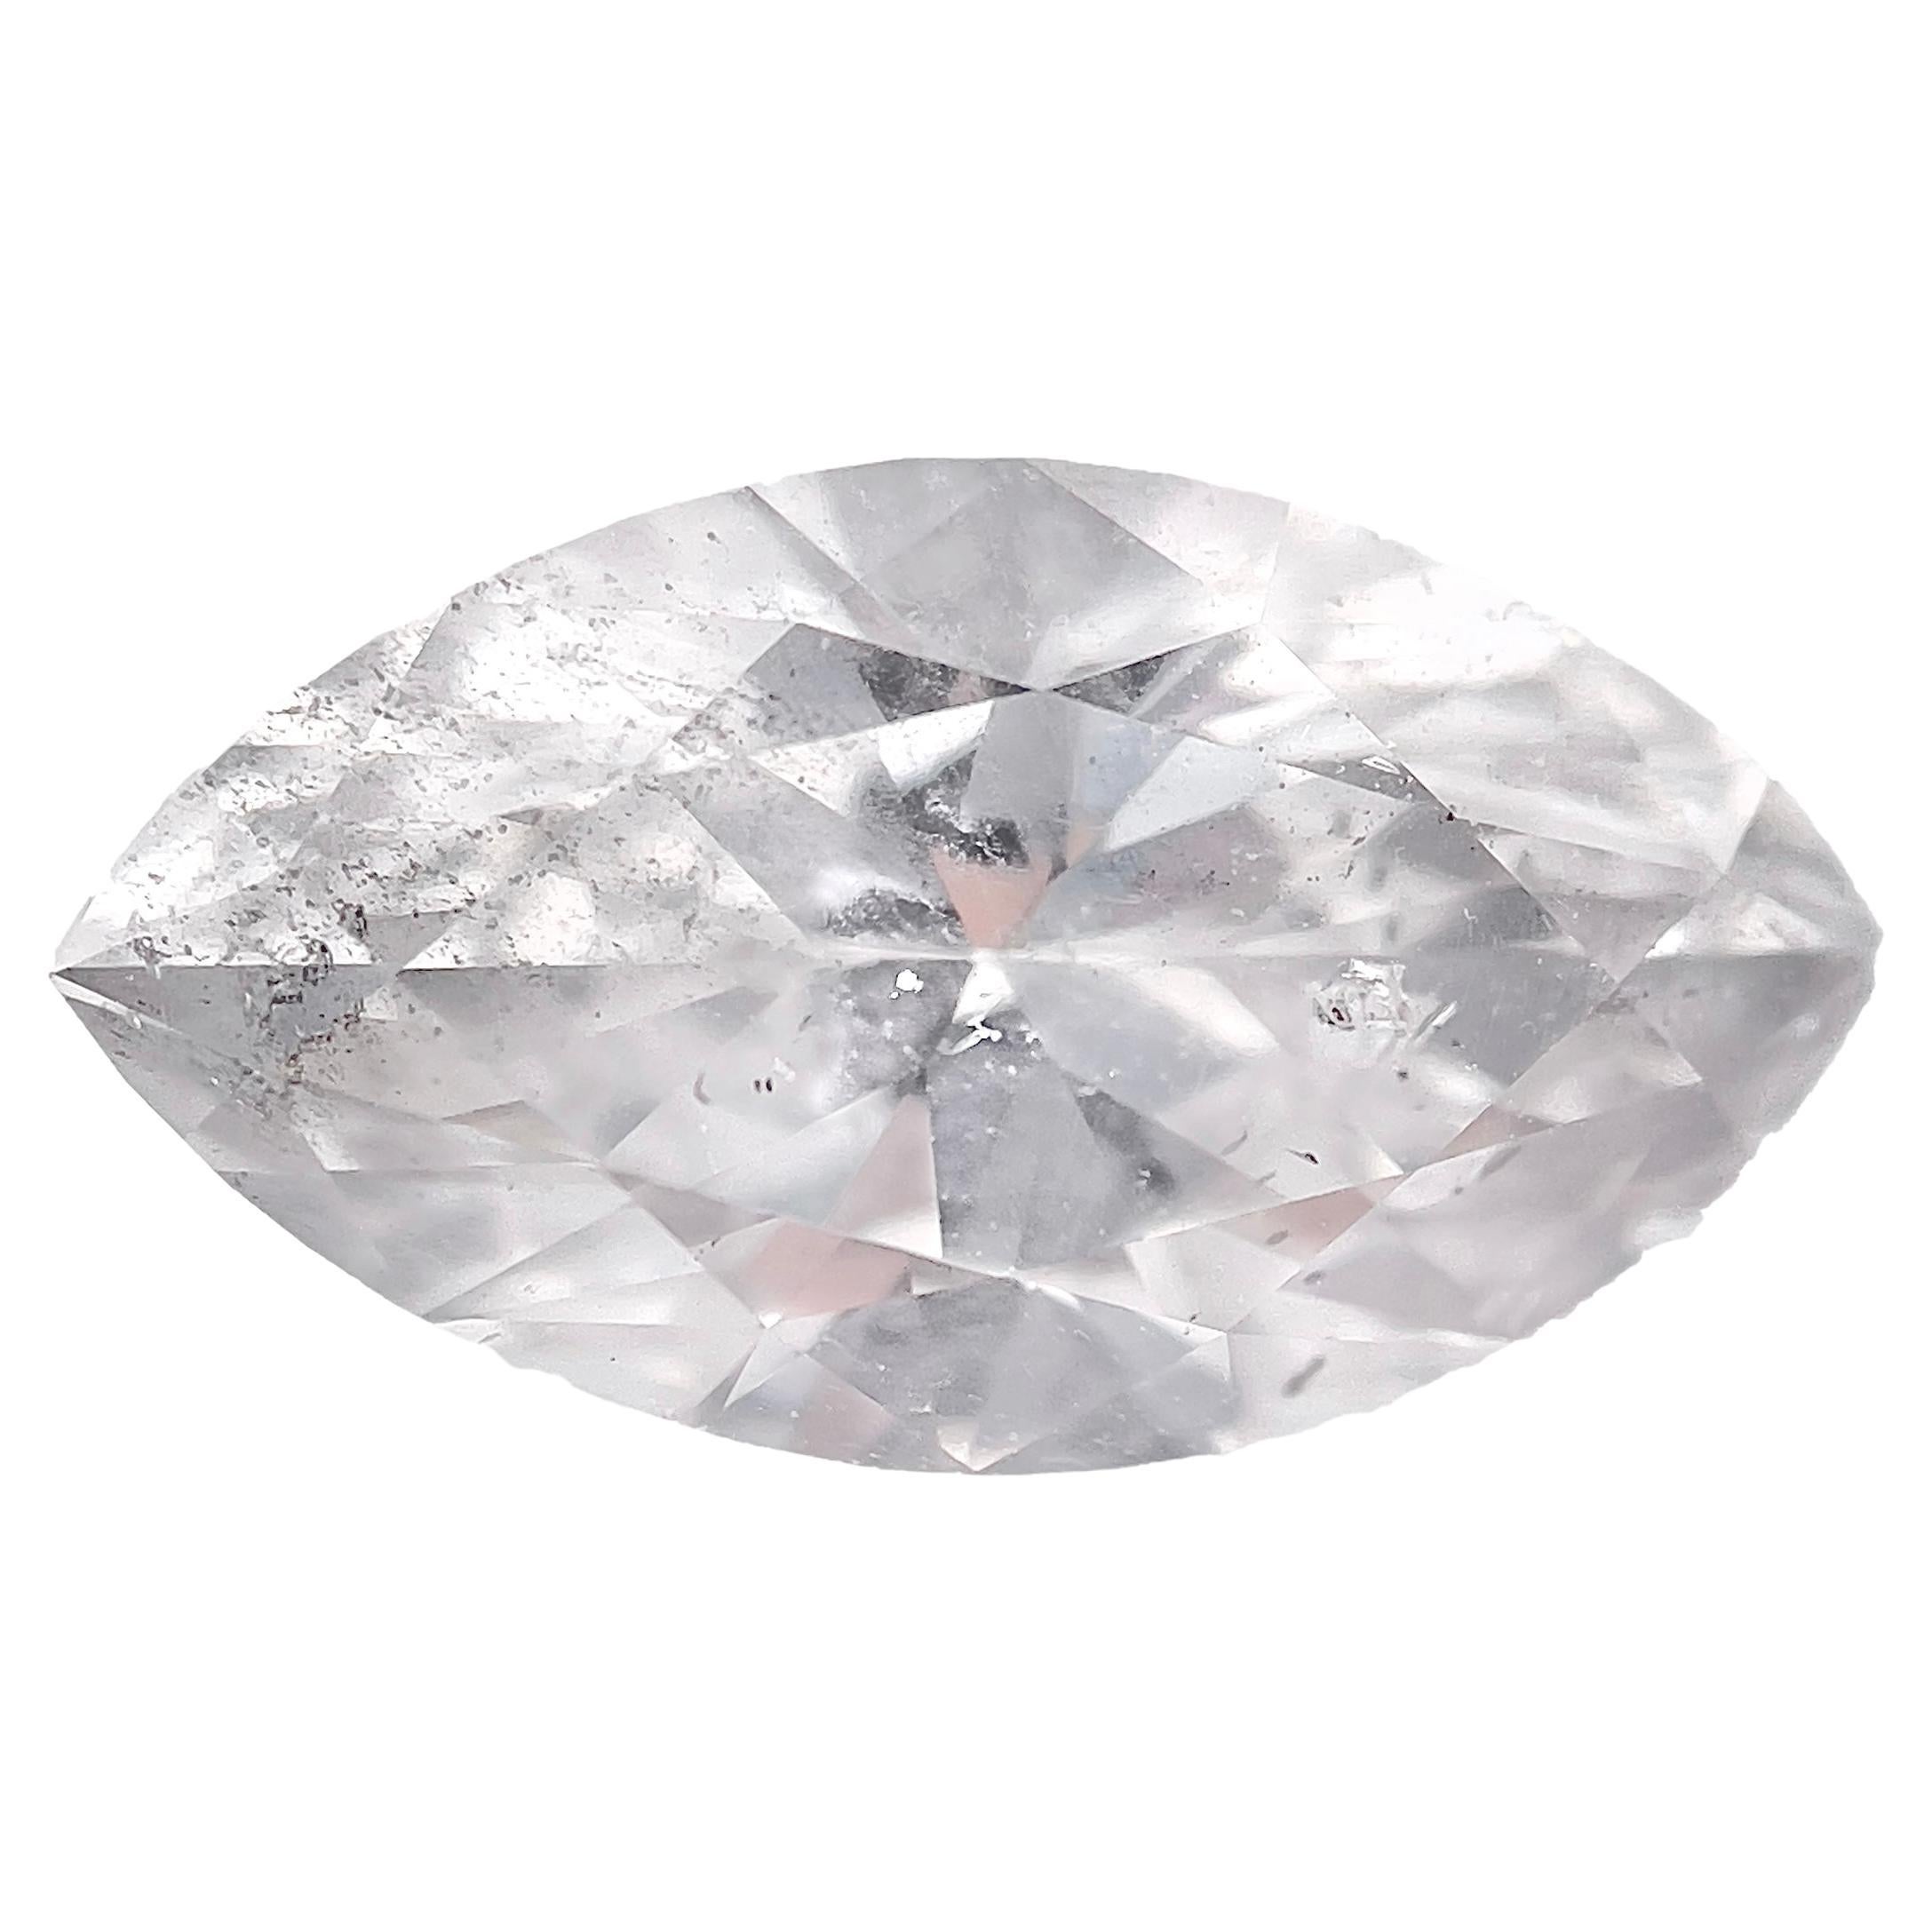 Diamant naturel marquise de 1,81 carat de couleur F et de pureté I1, certifié par le GIA